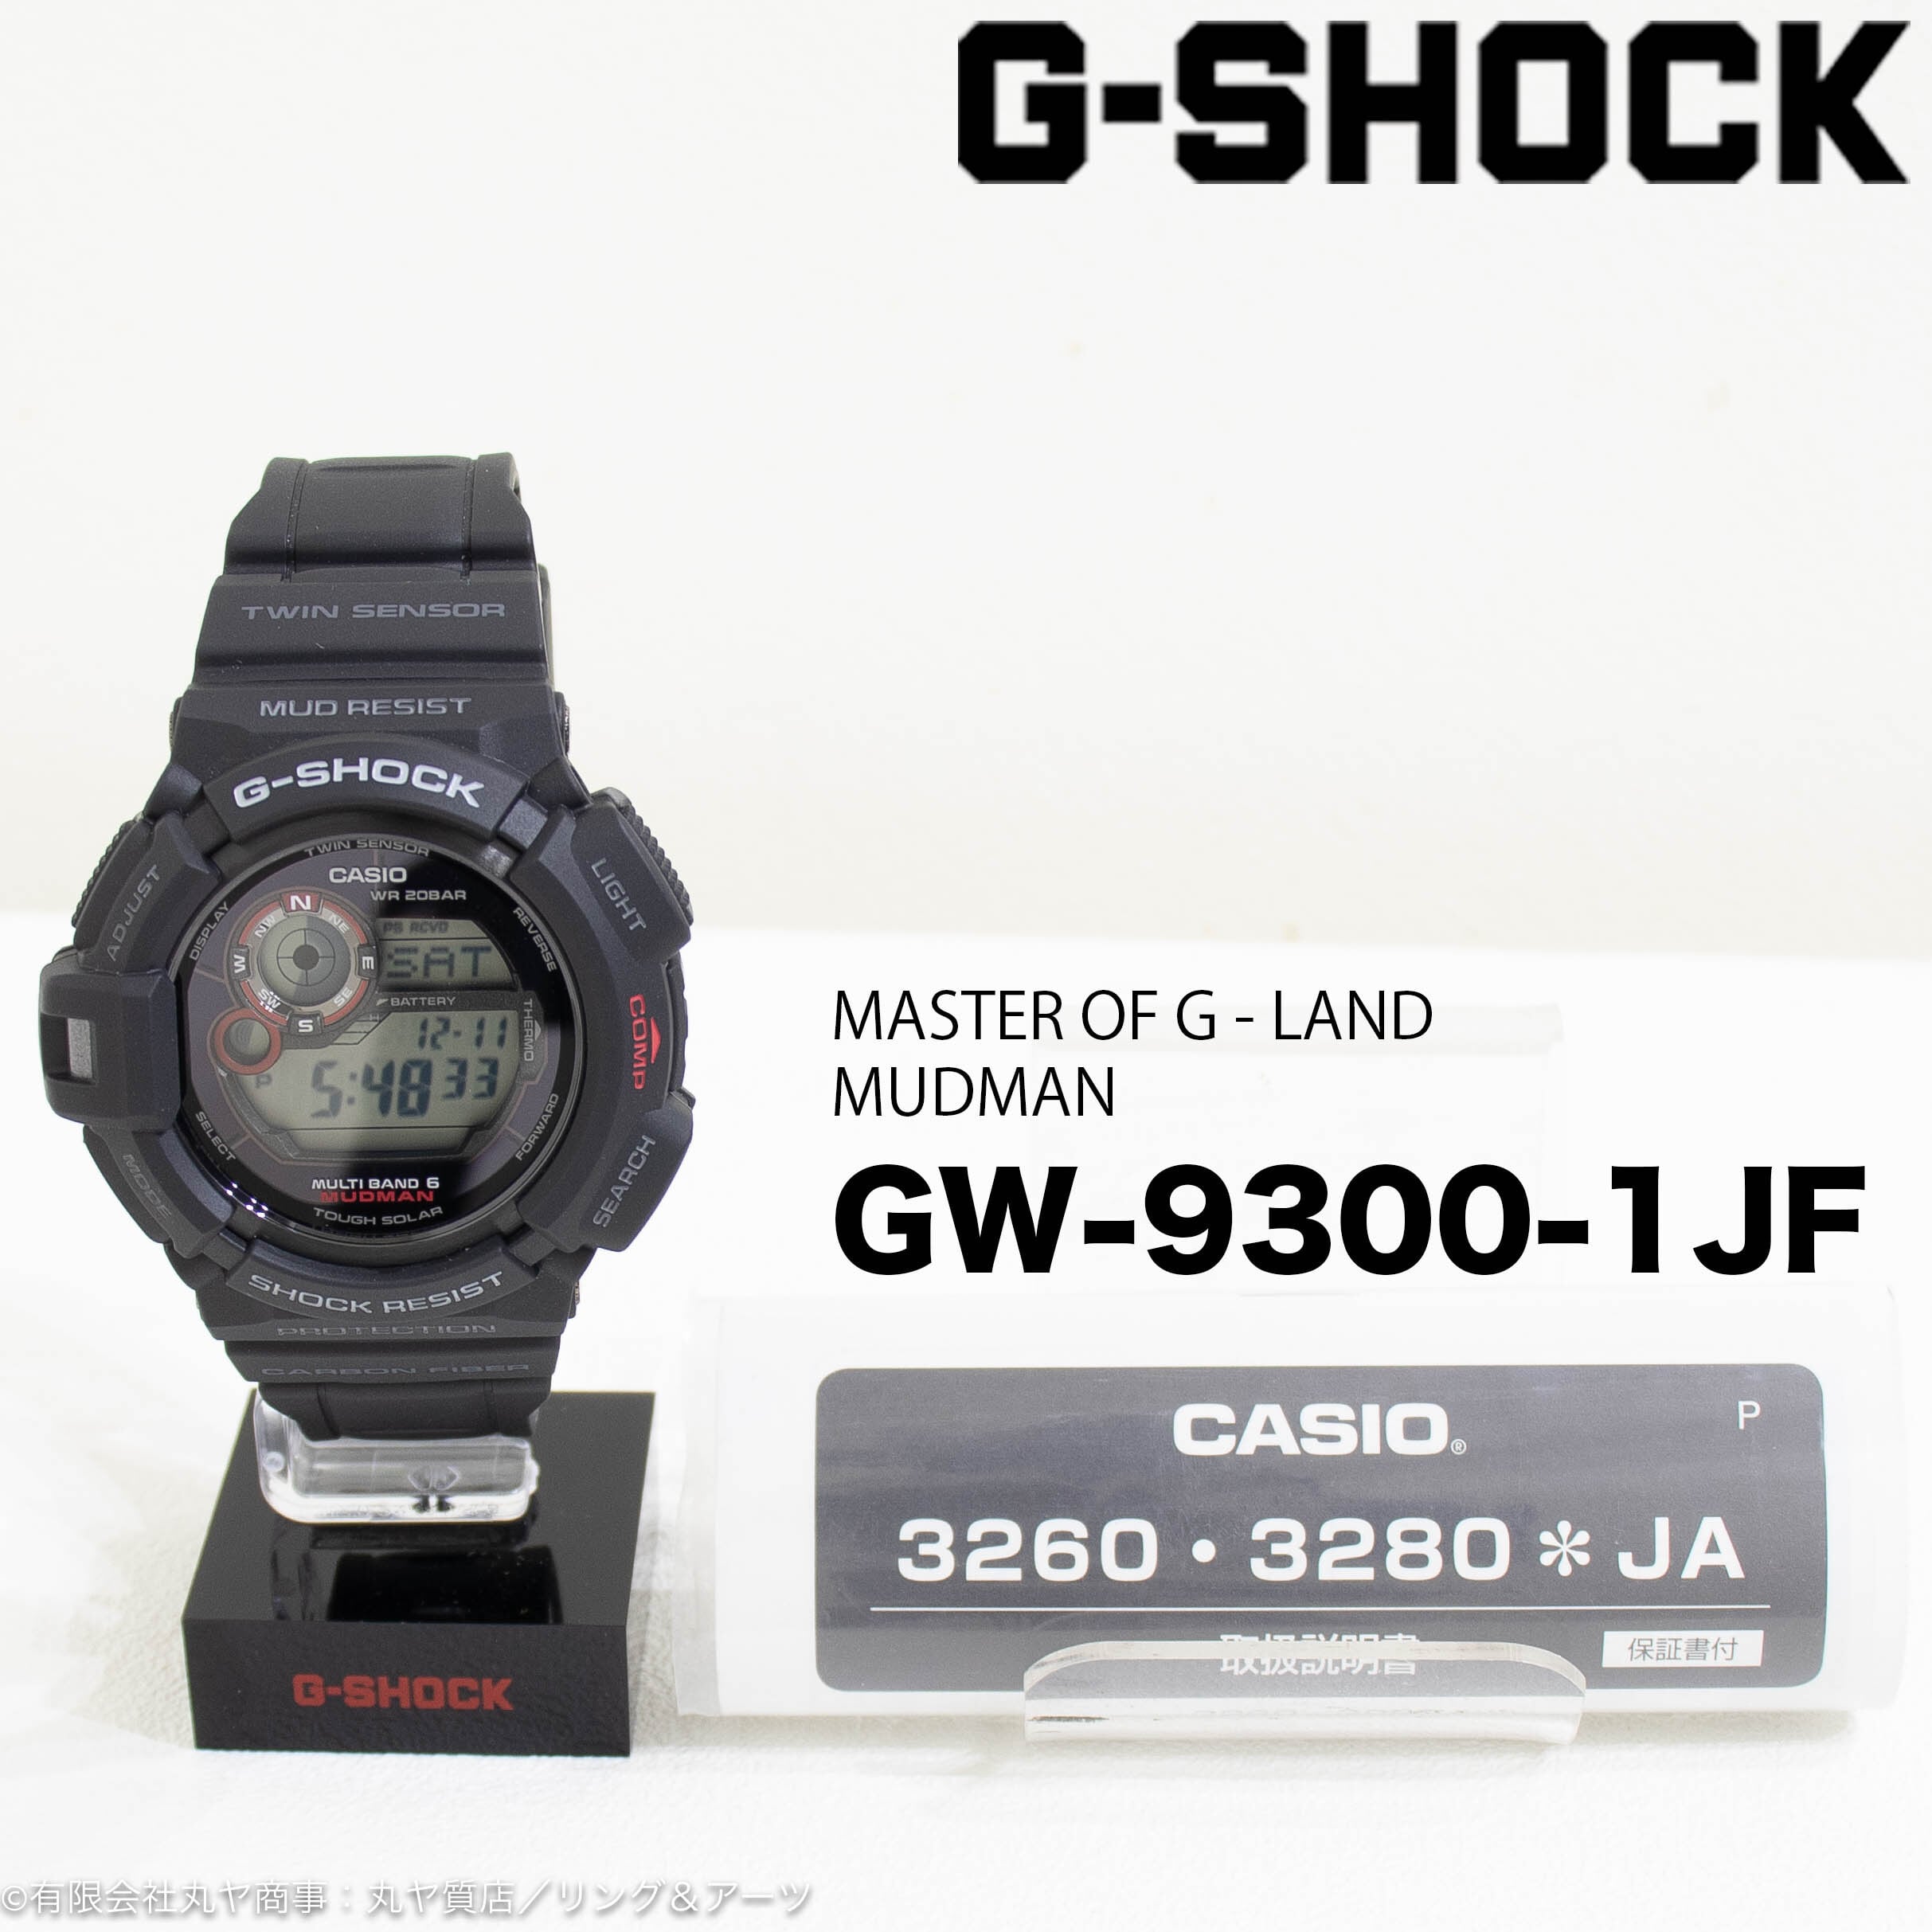 G-SHOCK GW-9300-1JF MUDMAN